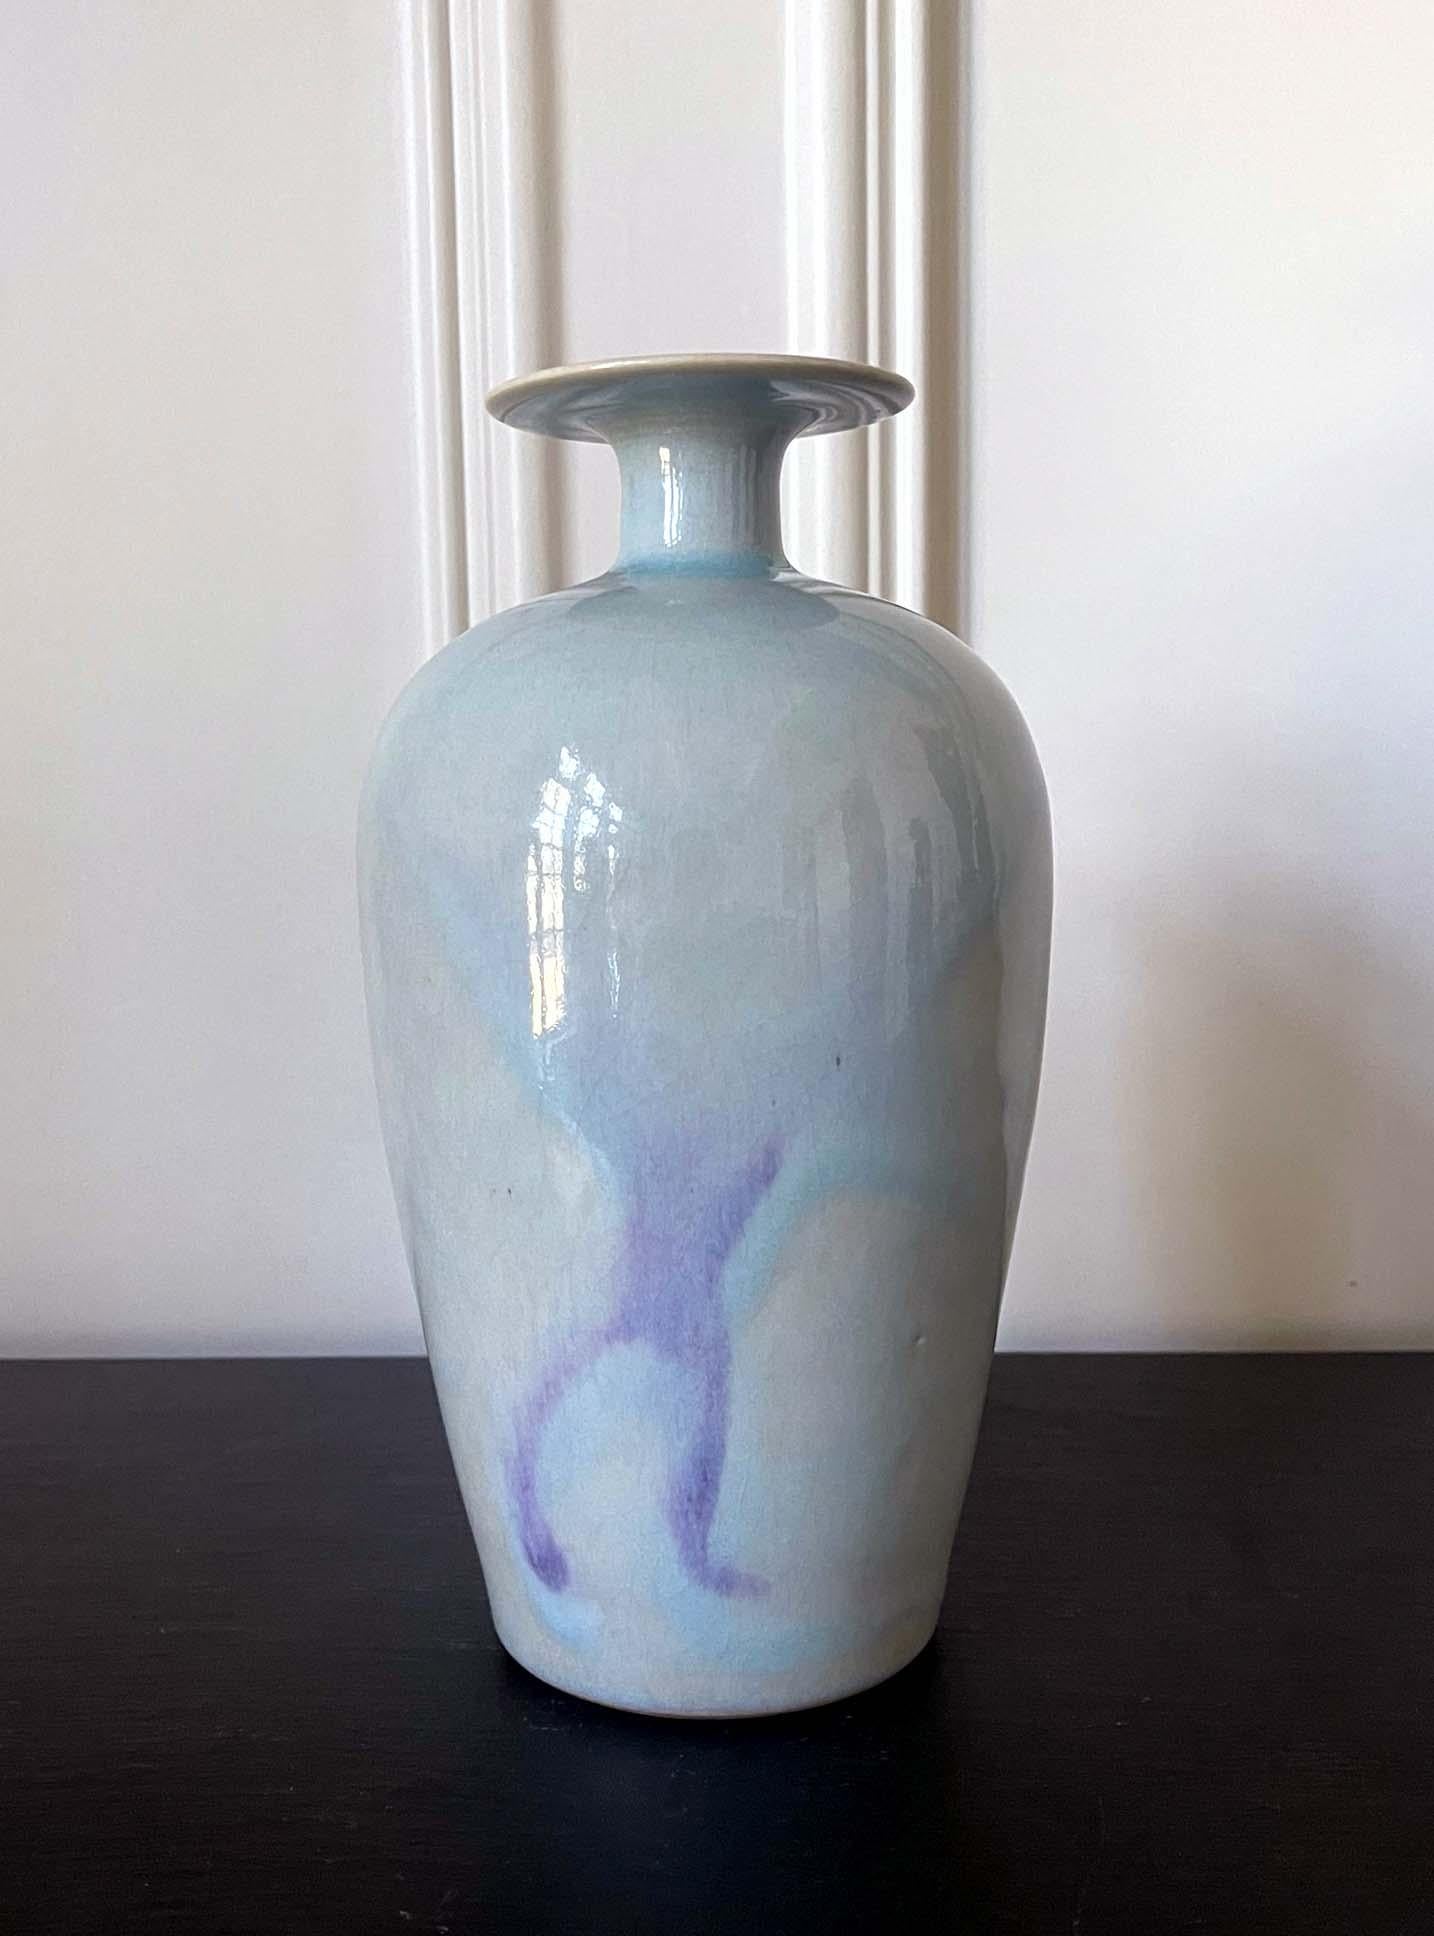 Keramikvase von Bruder Thomas Bezanson (1929-2007), ca. 1970er Jahre. Die Vase hat eine klassische chinesische 